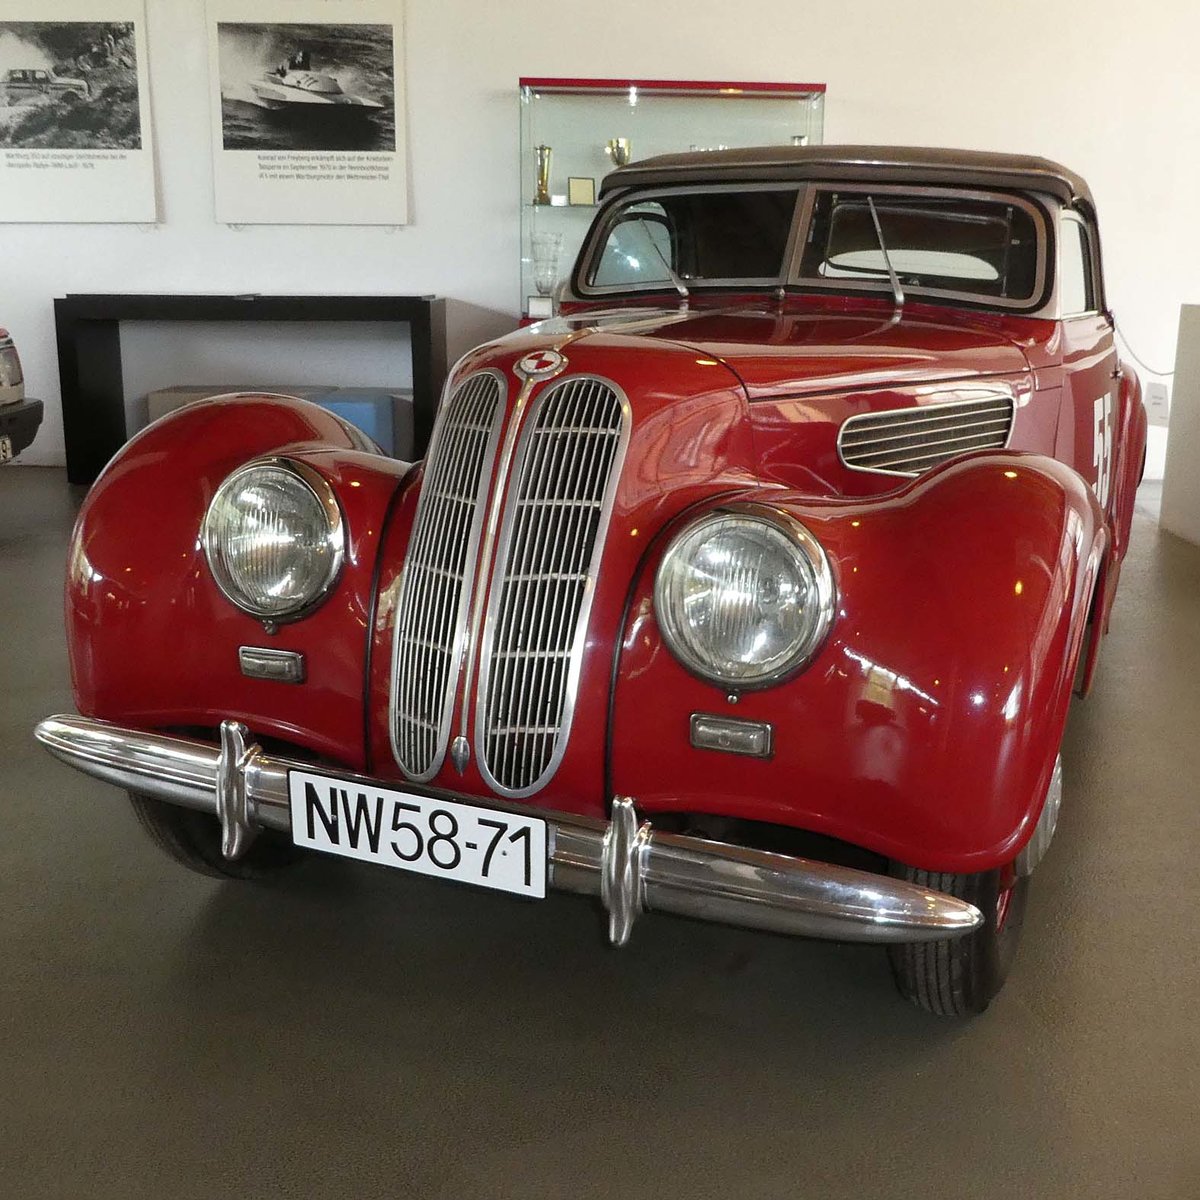 =EMW 327 Cabriolet, Bj. 1954, 57 PS, fotografiert im Juli 2016 in der Automobilwelt Eisenach